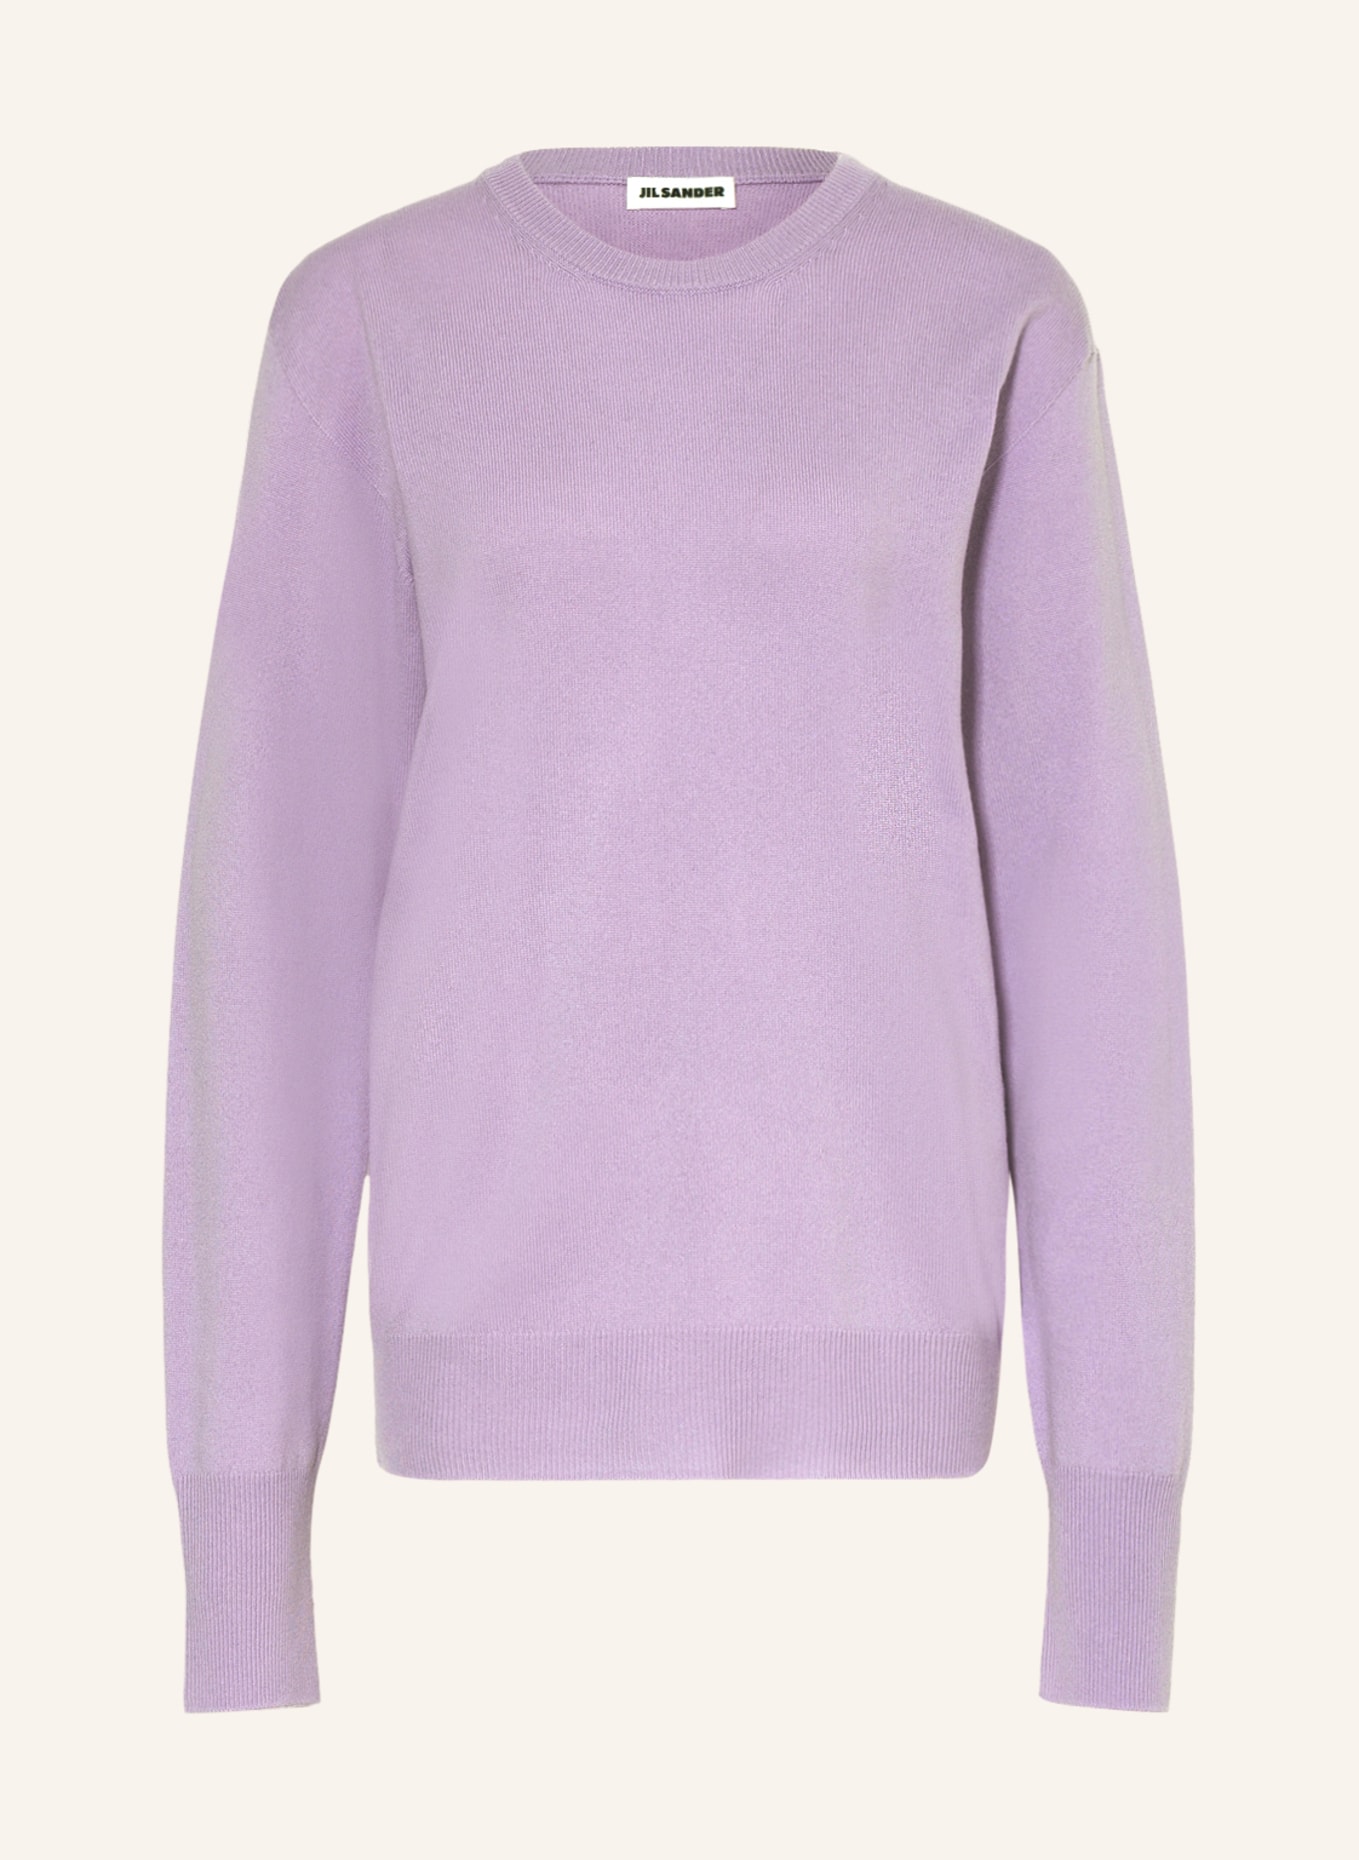 JIL SANDER Cashmere-Pullover, Farbe: LILA (Bild 1)